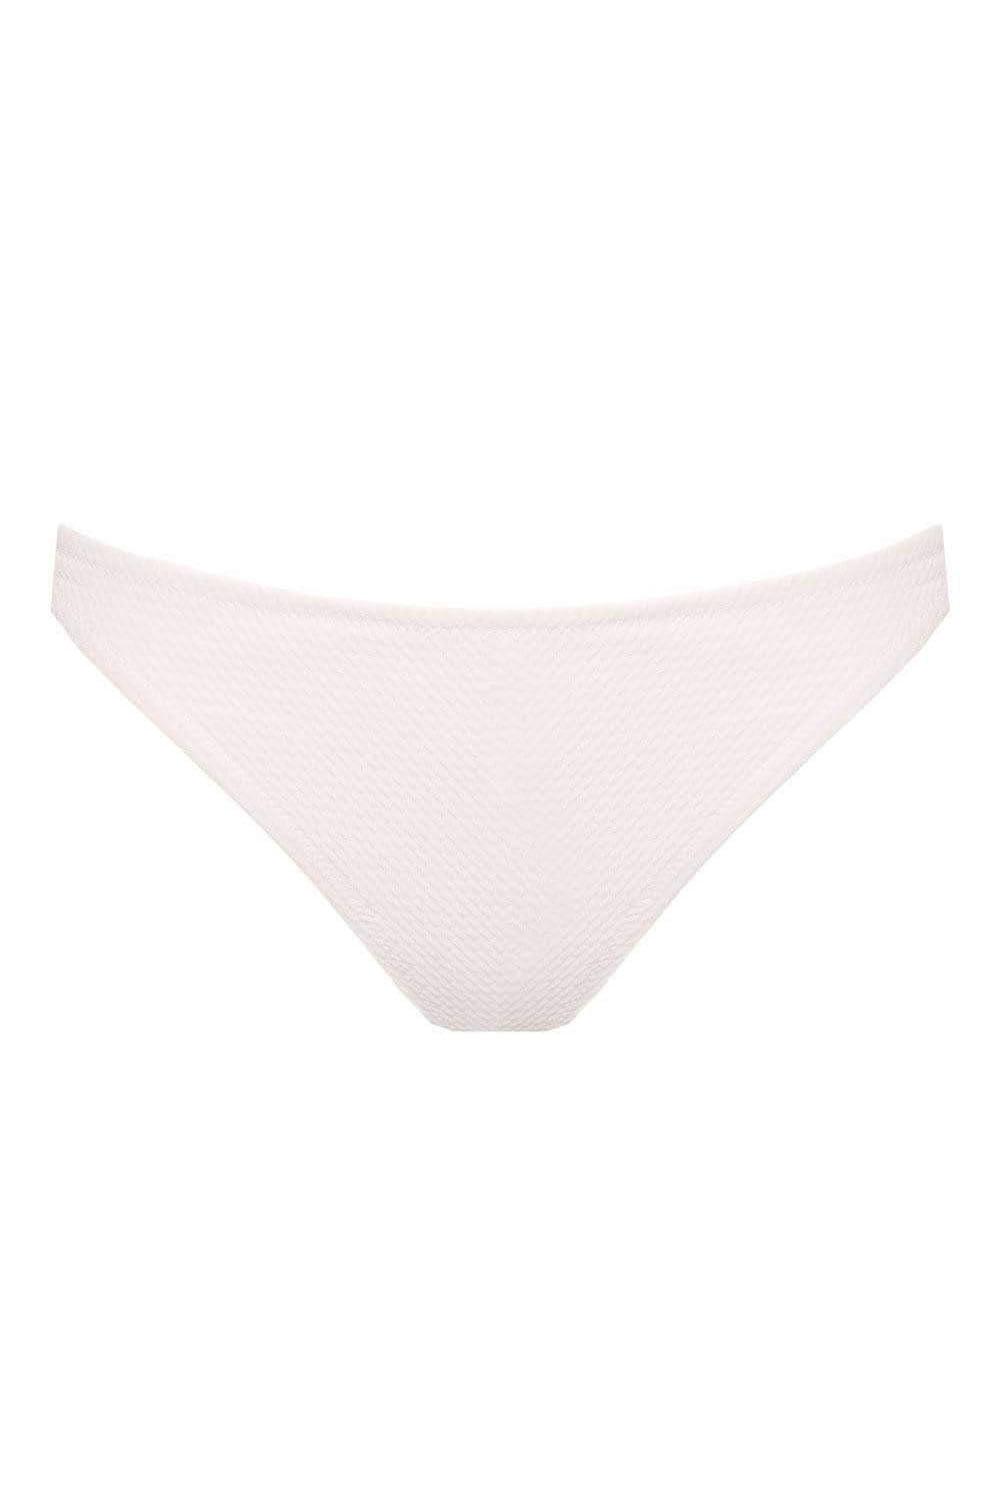 Glaceè vanilla slip bikini bottom - Bikini bottom by Love Jilty. Shop on yesUndress